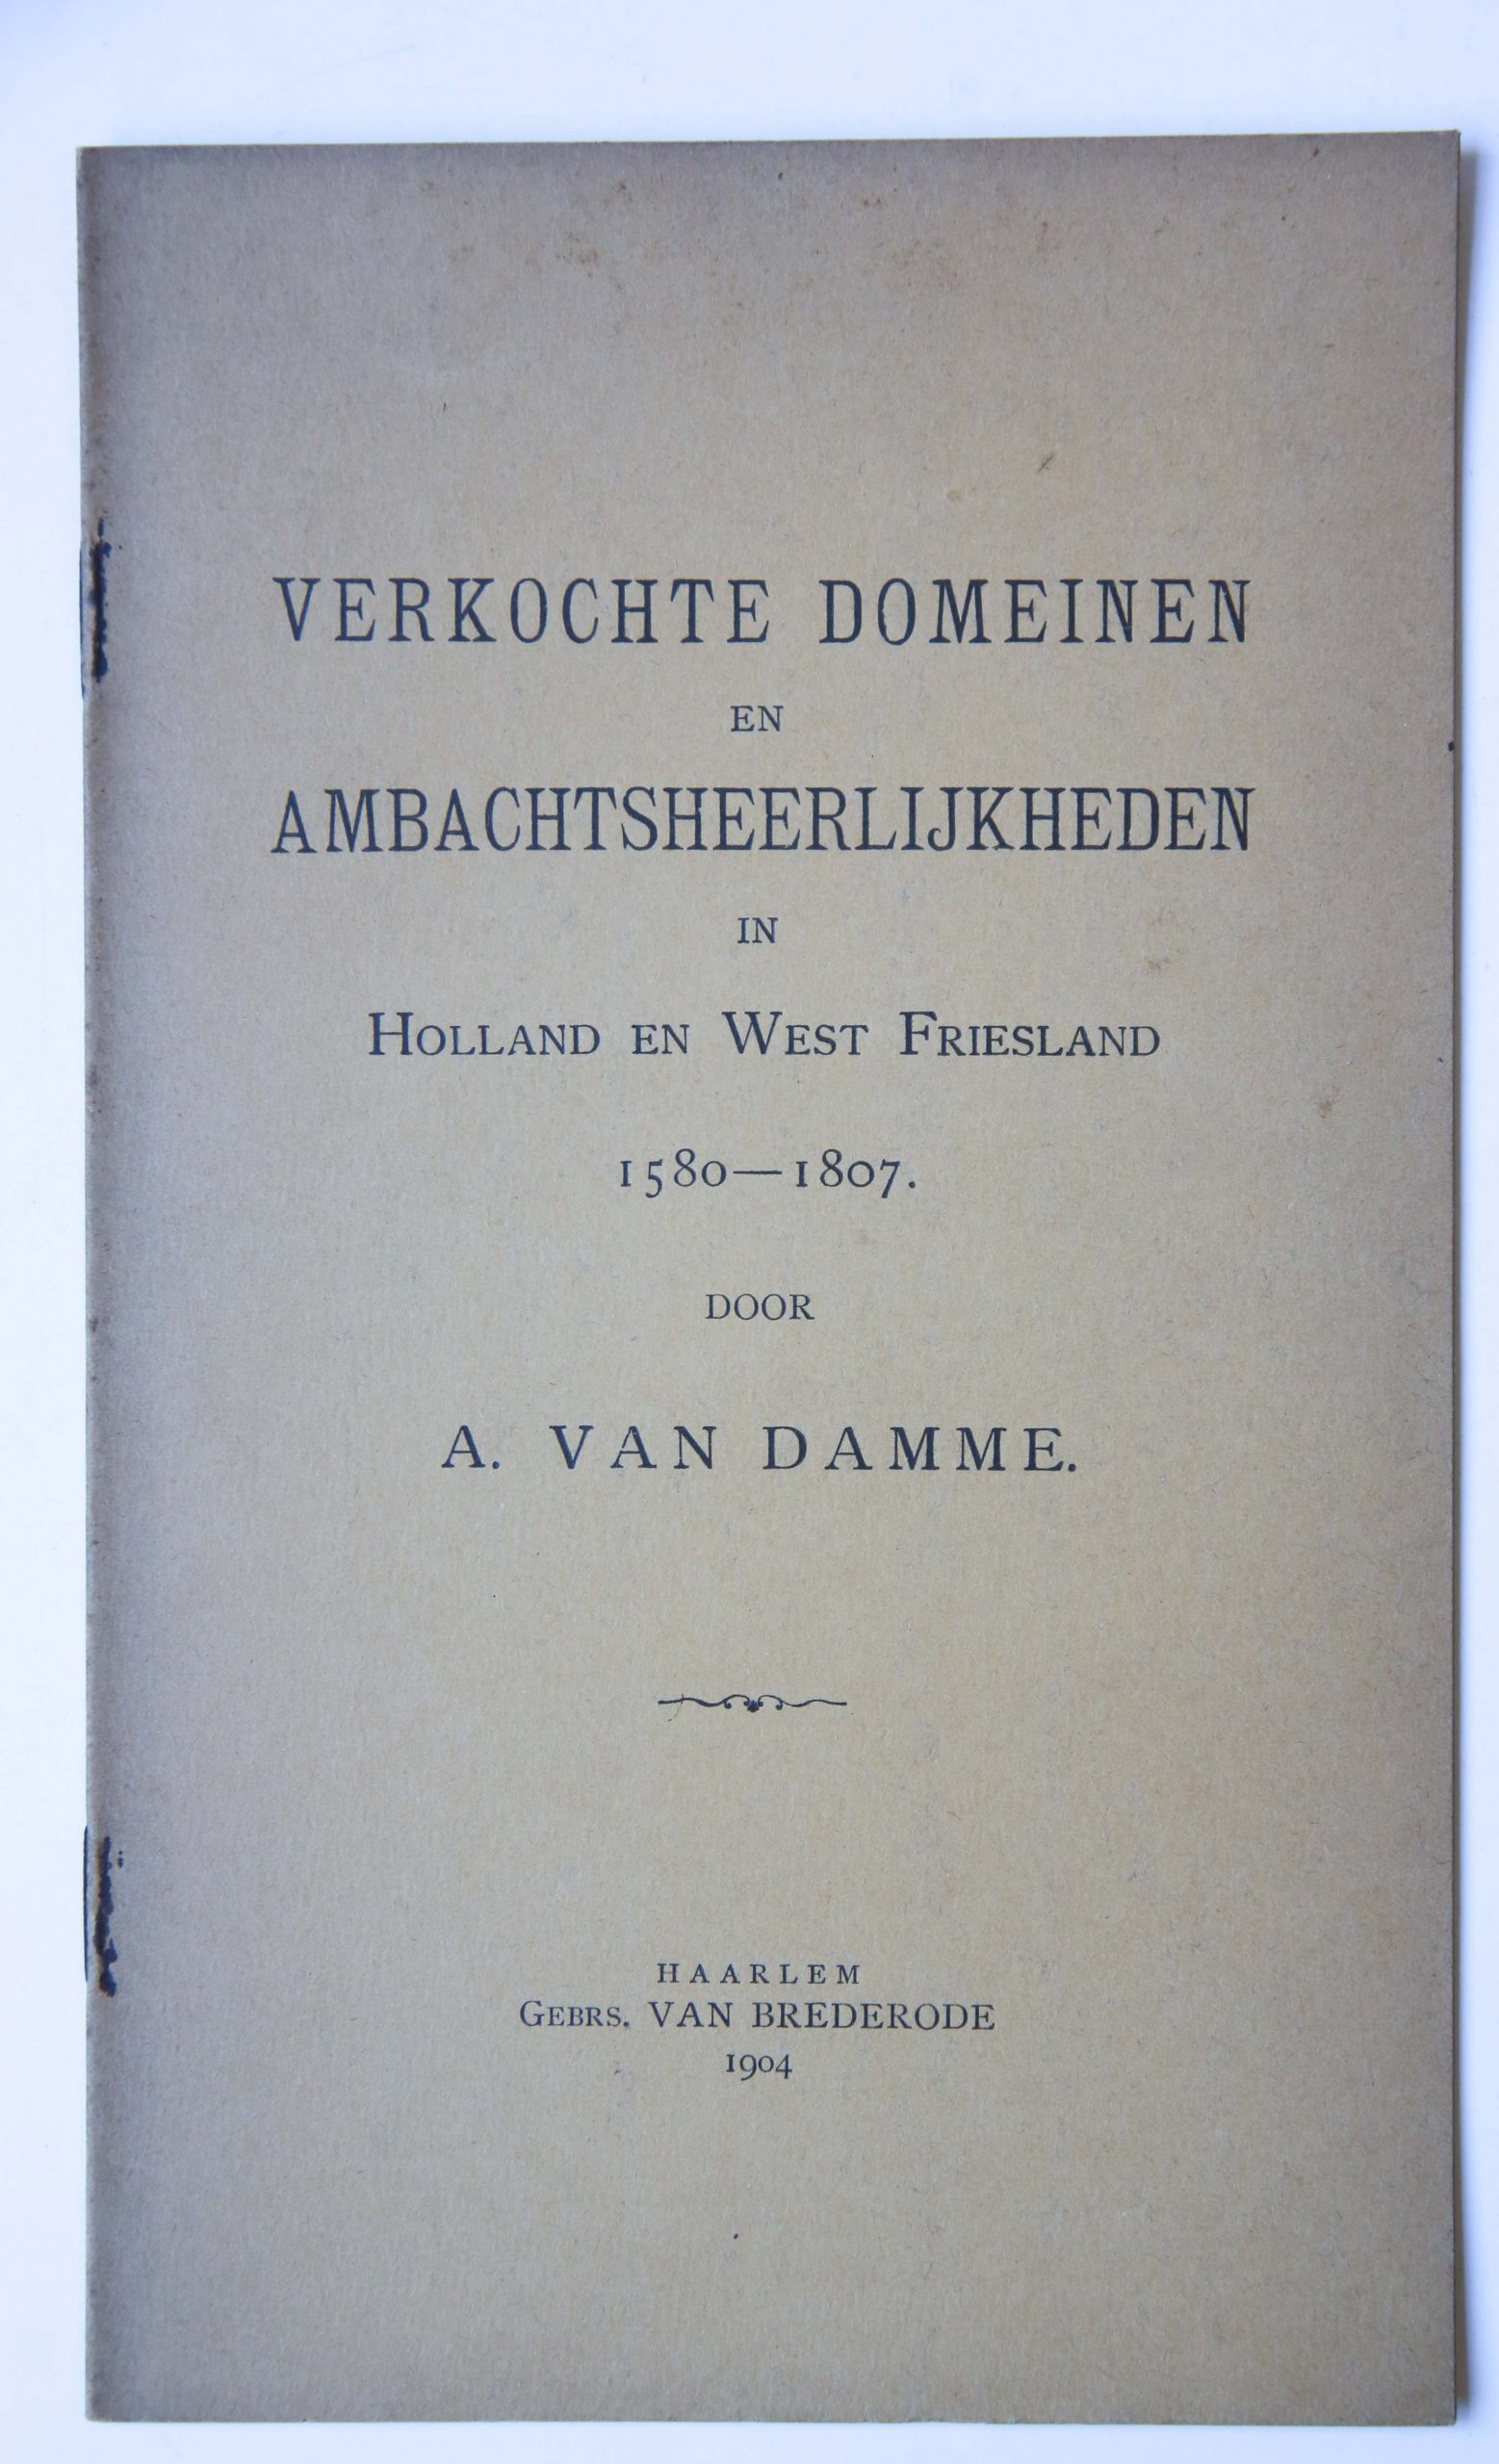 Damme, van A. - Verkochte domeinen en ambachtsheerlijkheden in Holland en West Friesland 1580 - 1807, Haarlem Brederode, 1904, 12 pp.